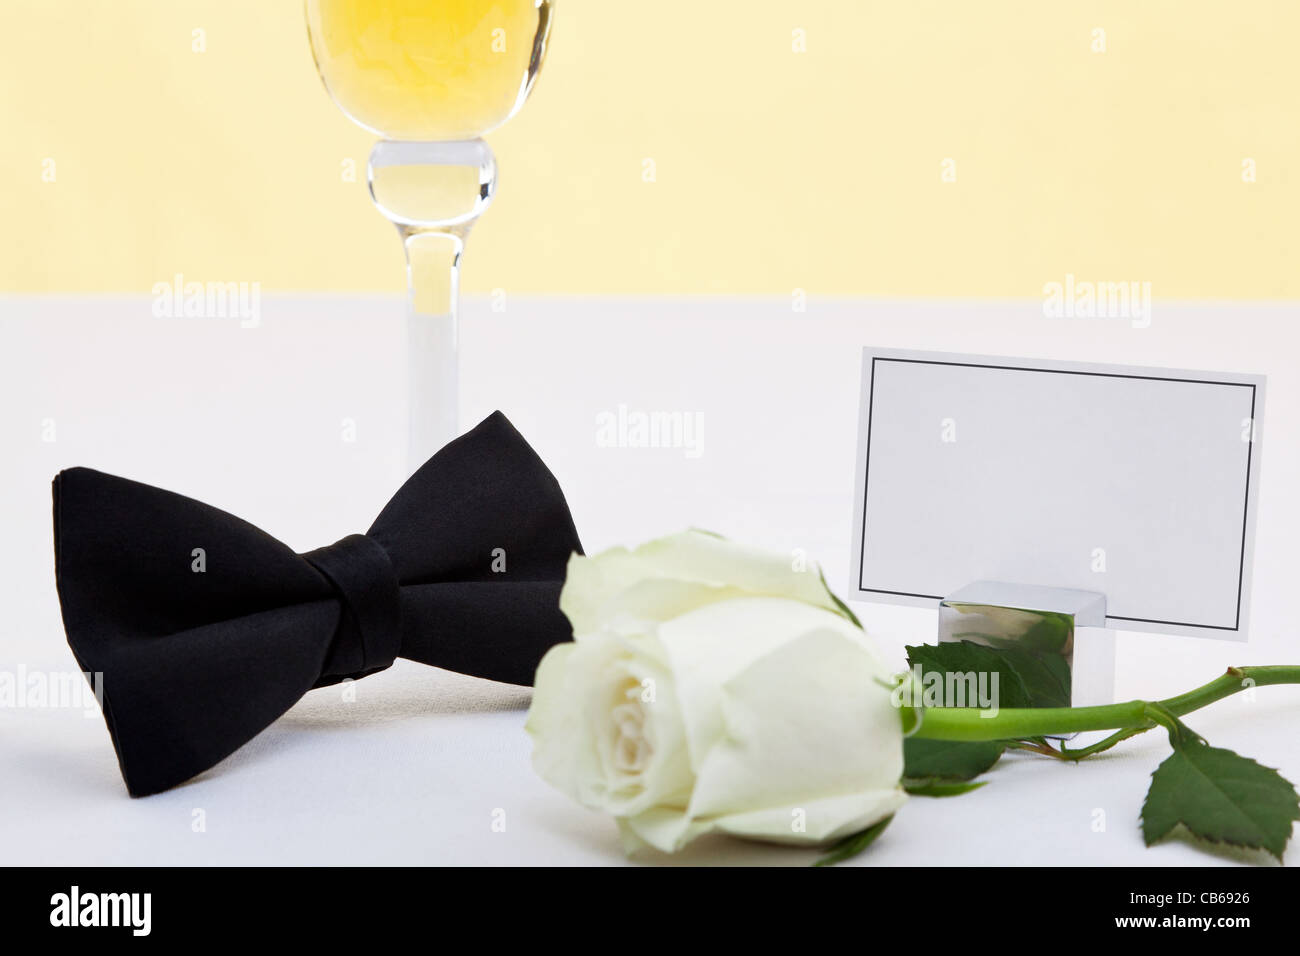 Foto de una pajarita negra, rosa blanca, una copa de champán y una tarjeta en blanco para añadir su propio mensaje. Foto de stock